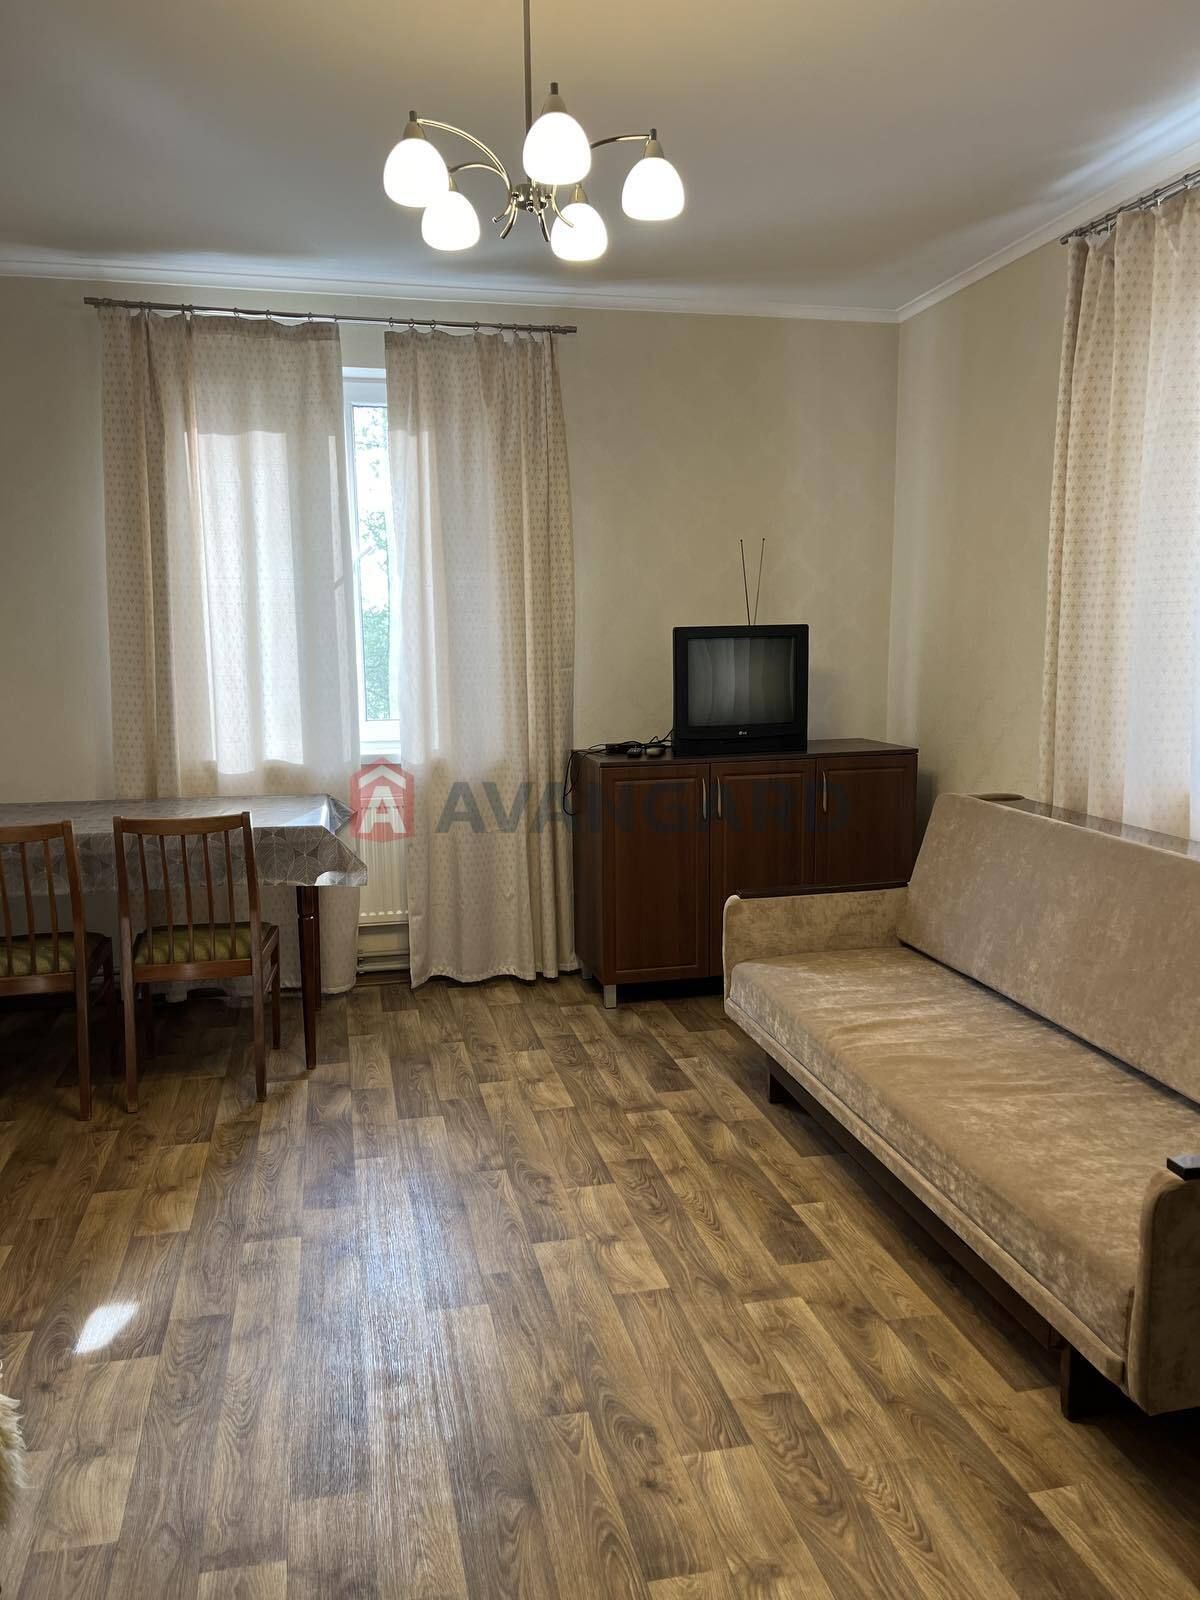 Задаётся 2-х комнатная квартира на Воронцова.